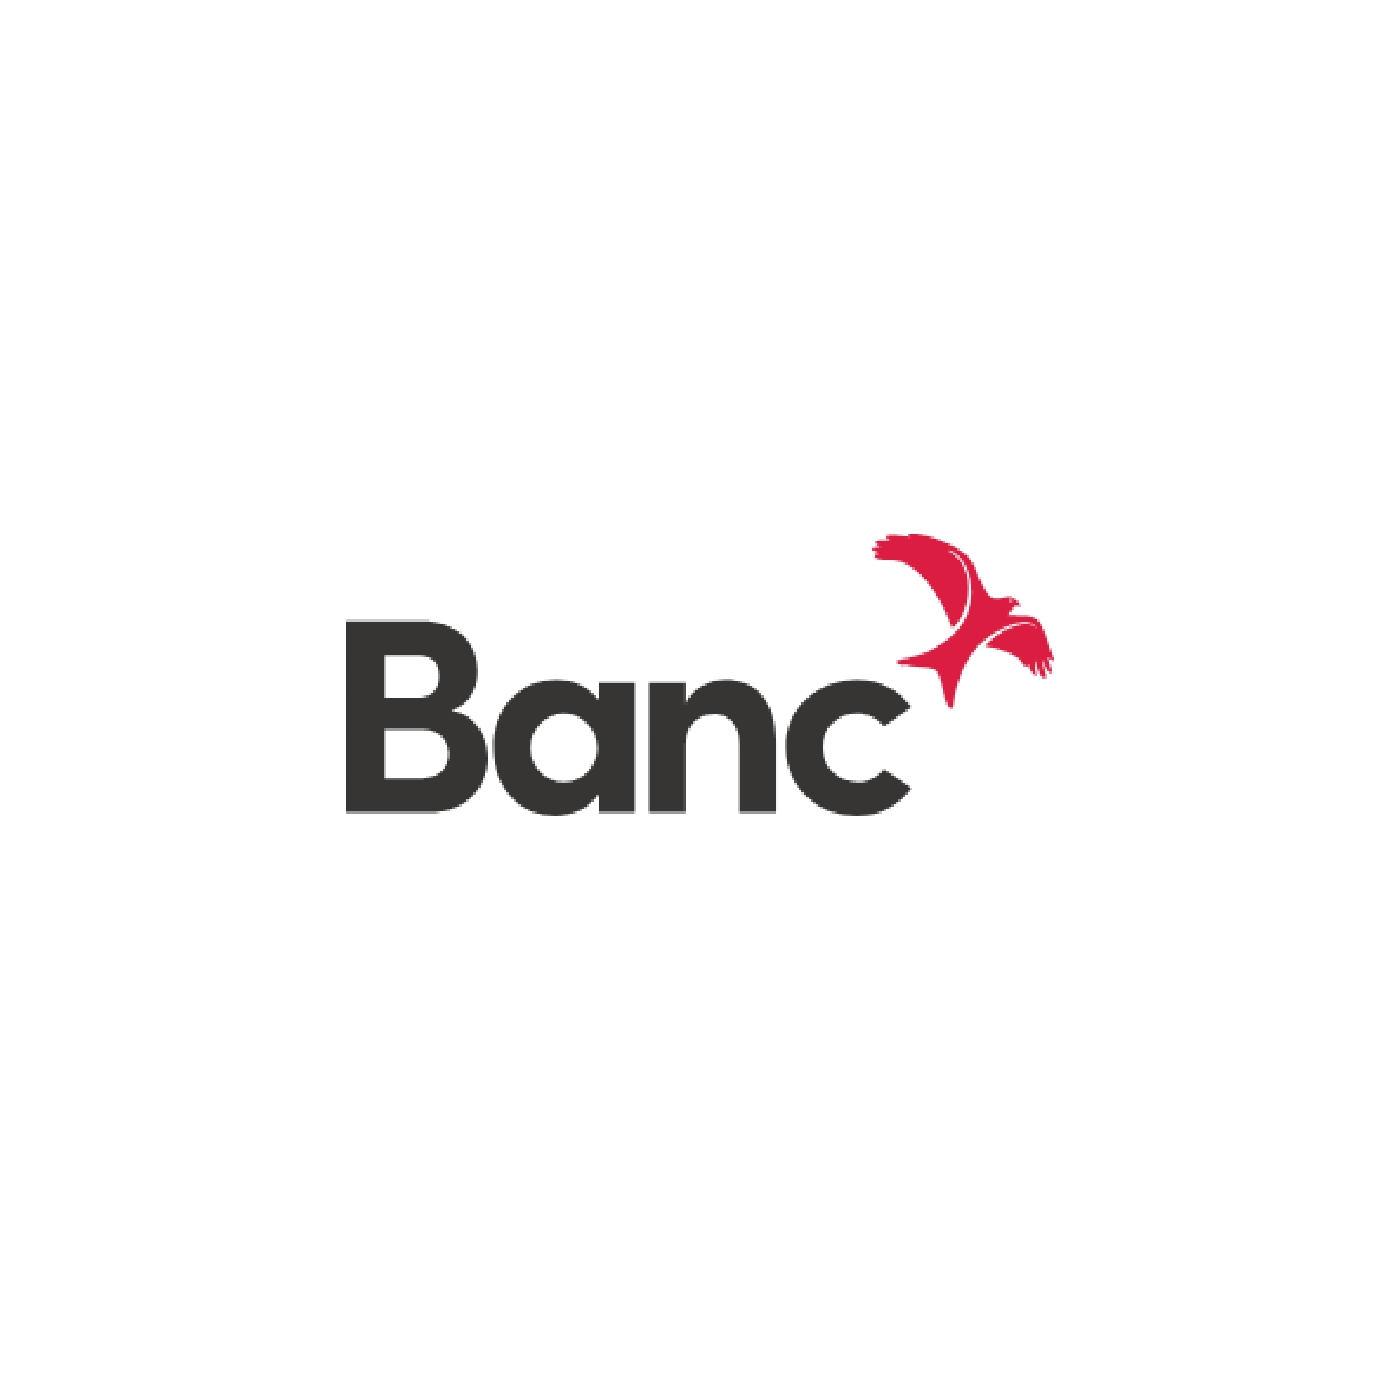 Banc.jpg